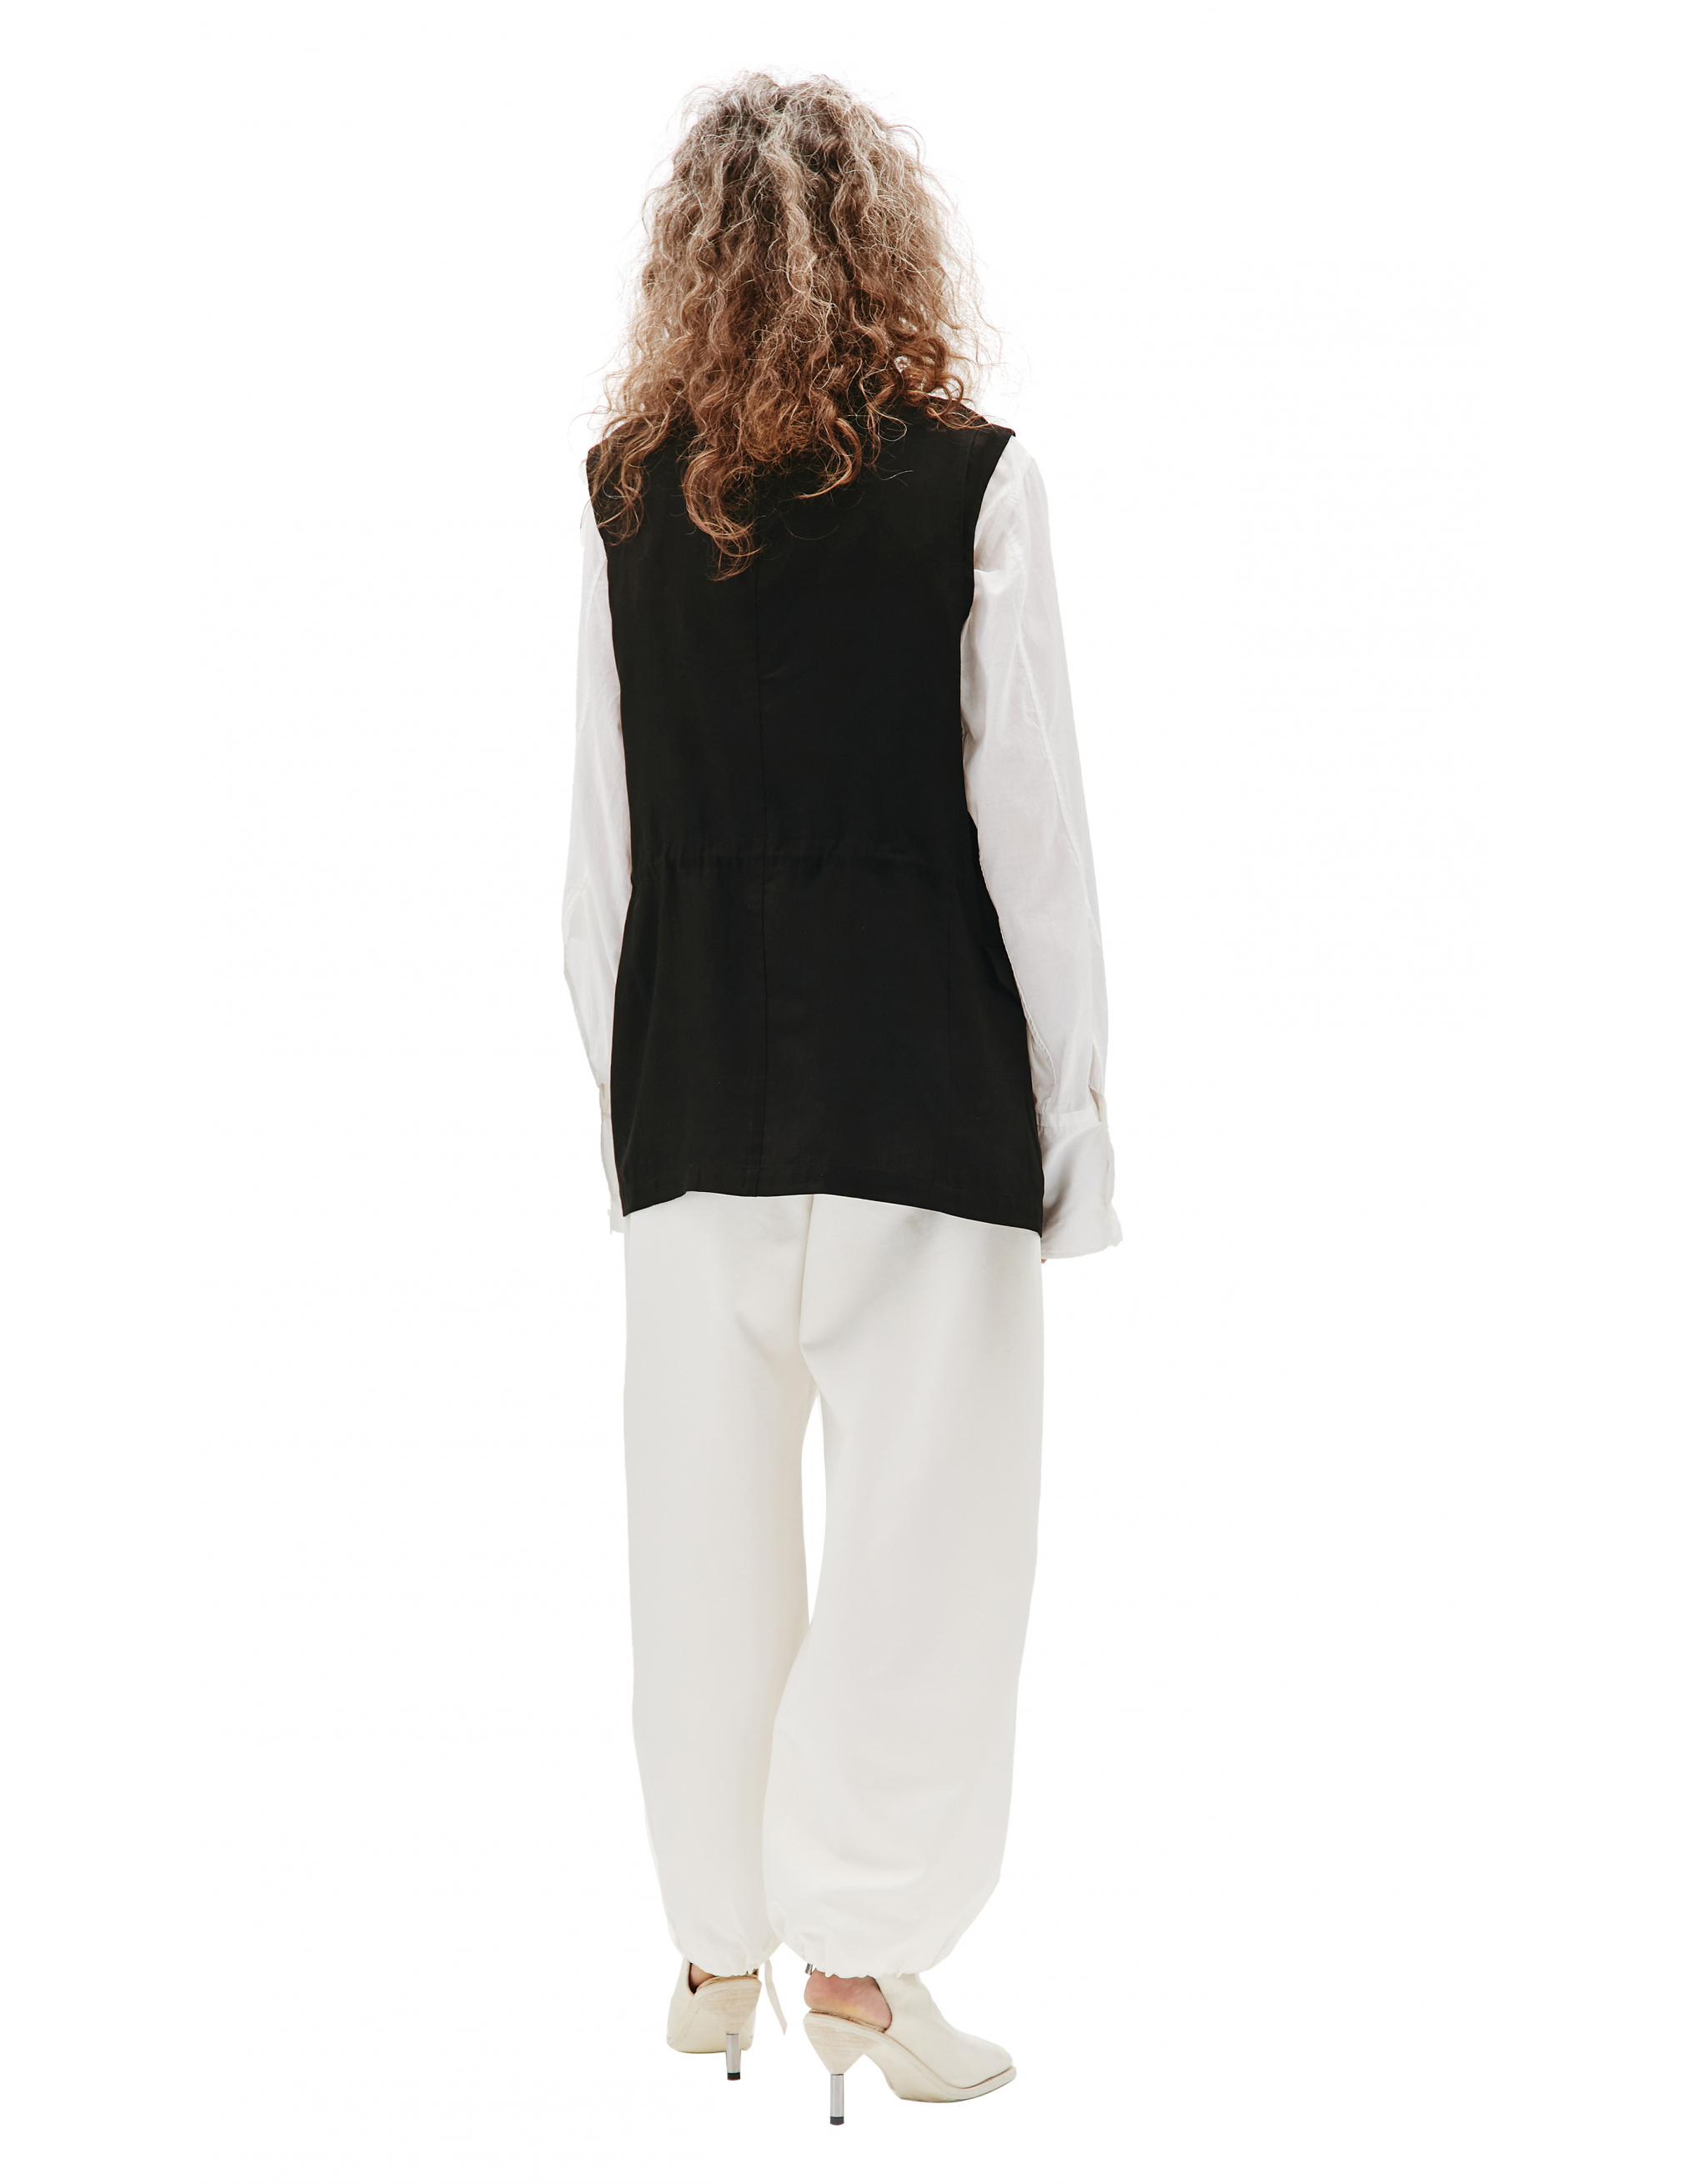 Black rayon vest Ys YD-V02-201-1, размер 2 - фото 3